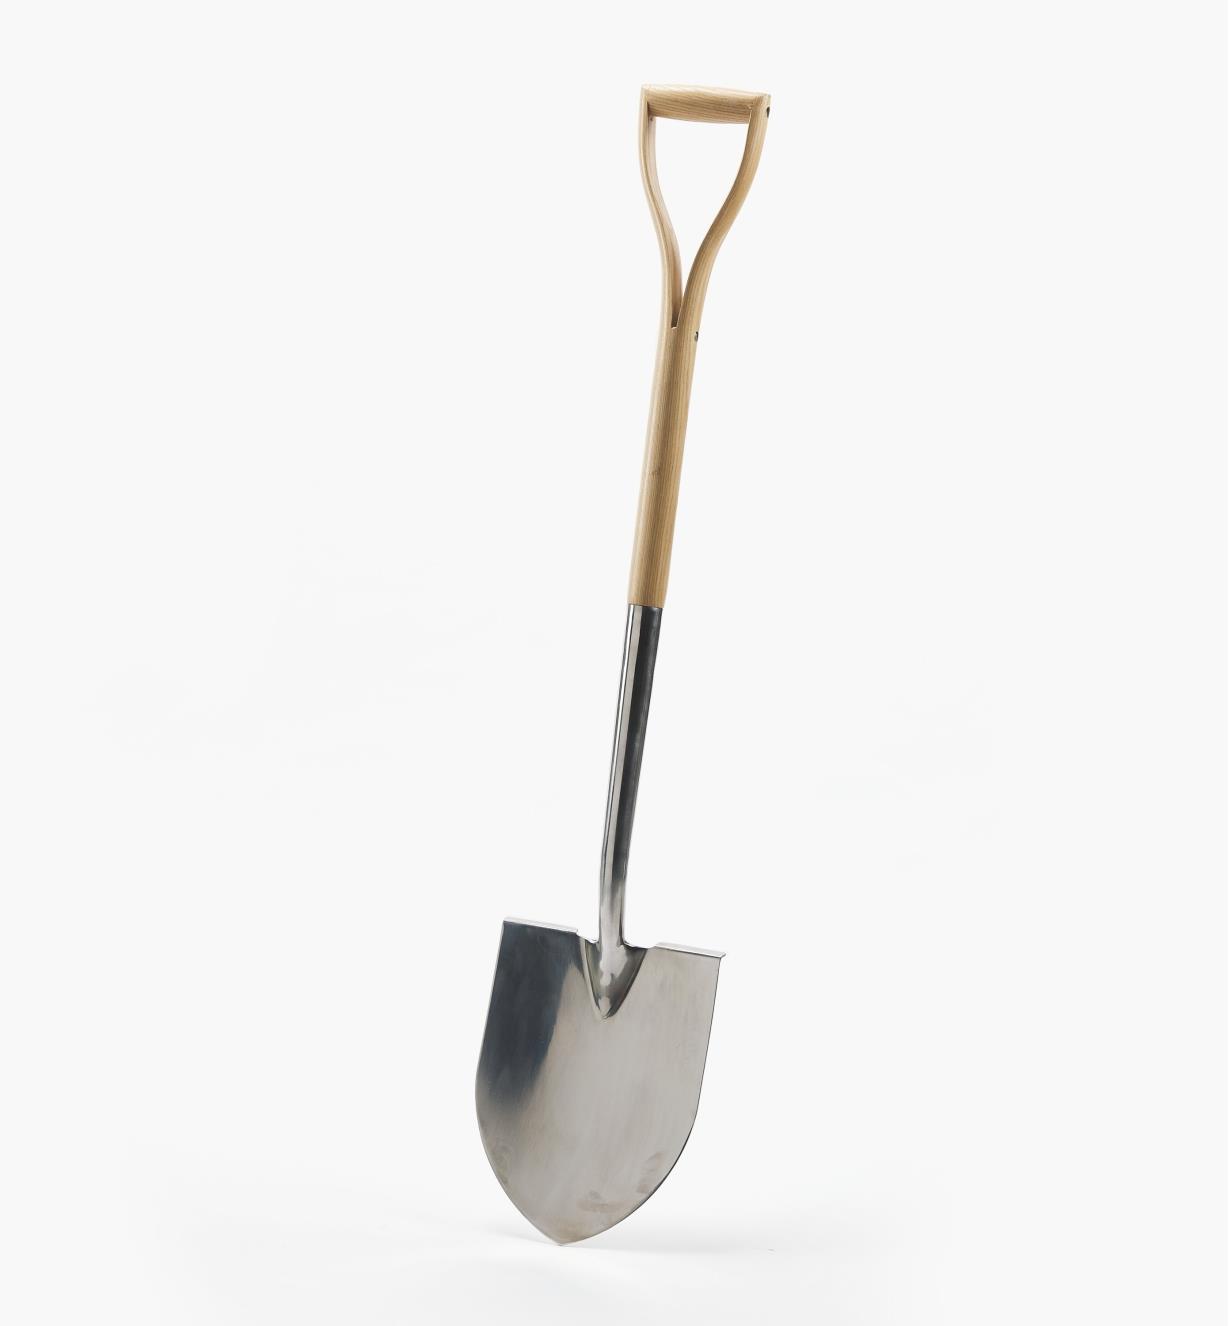 PG166 - Stainless-Steel Wood-Handled Shovel